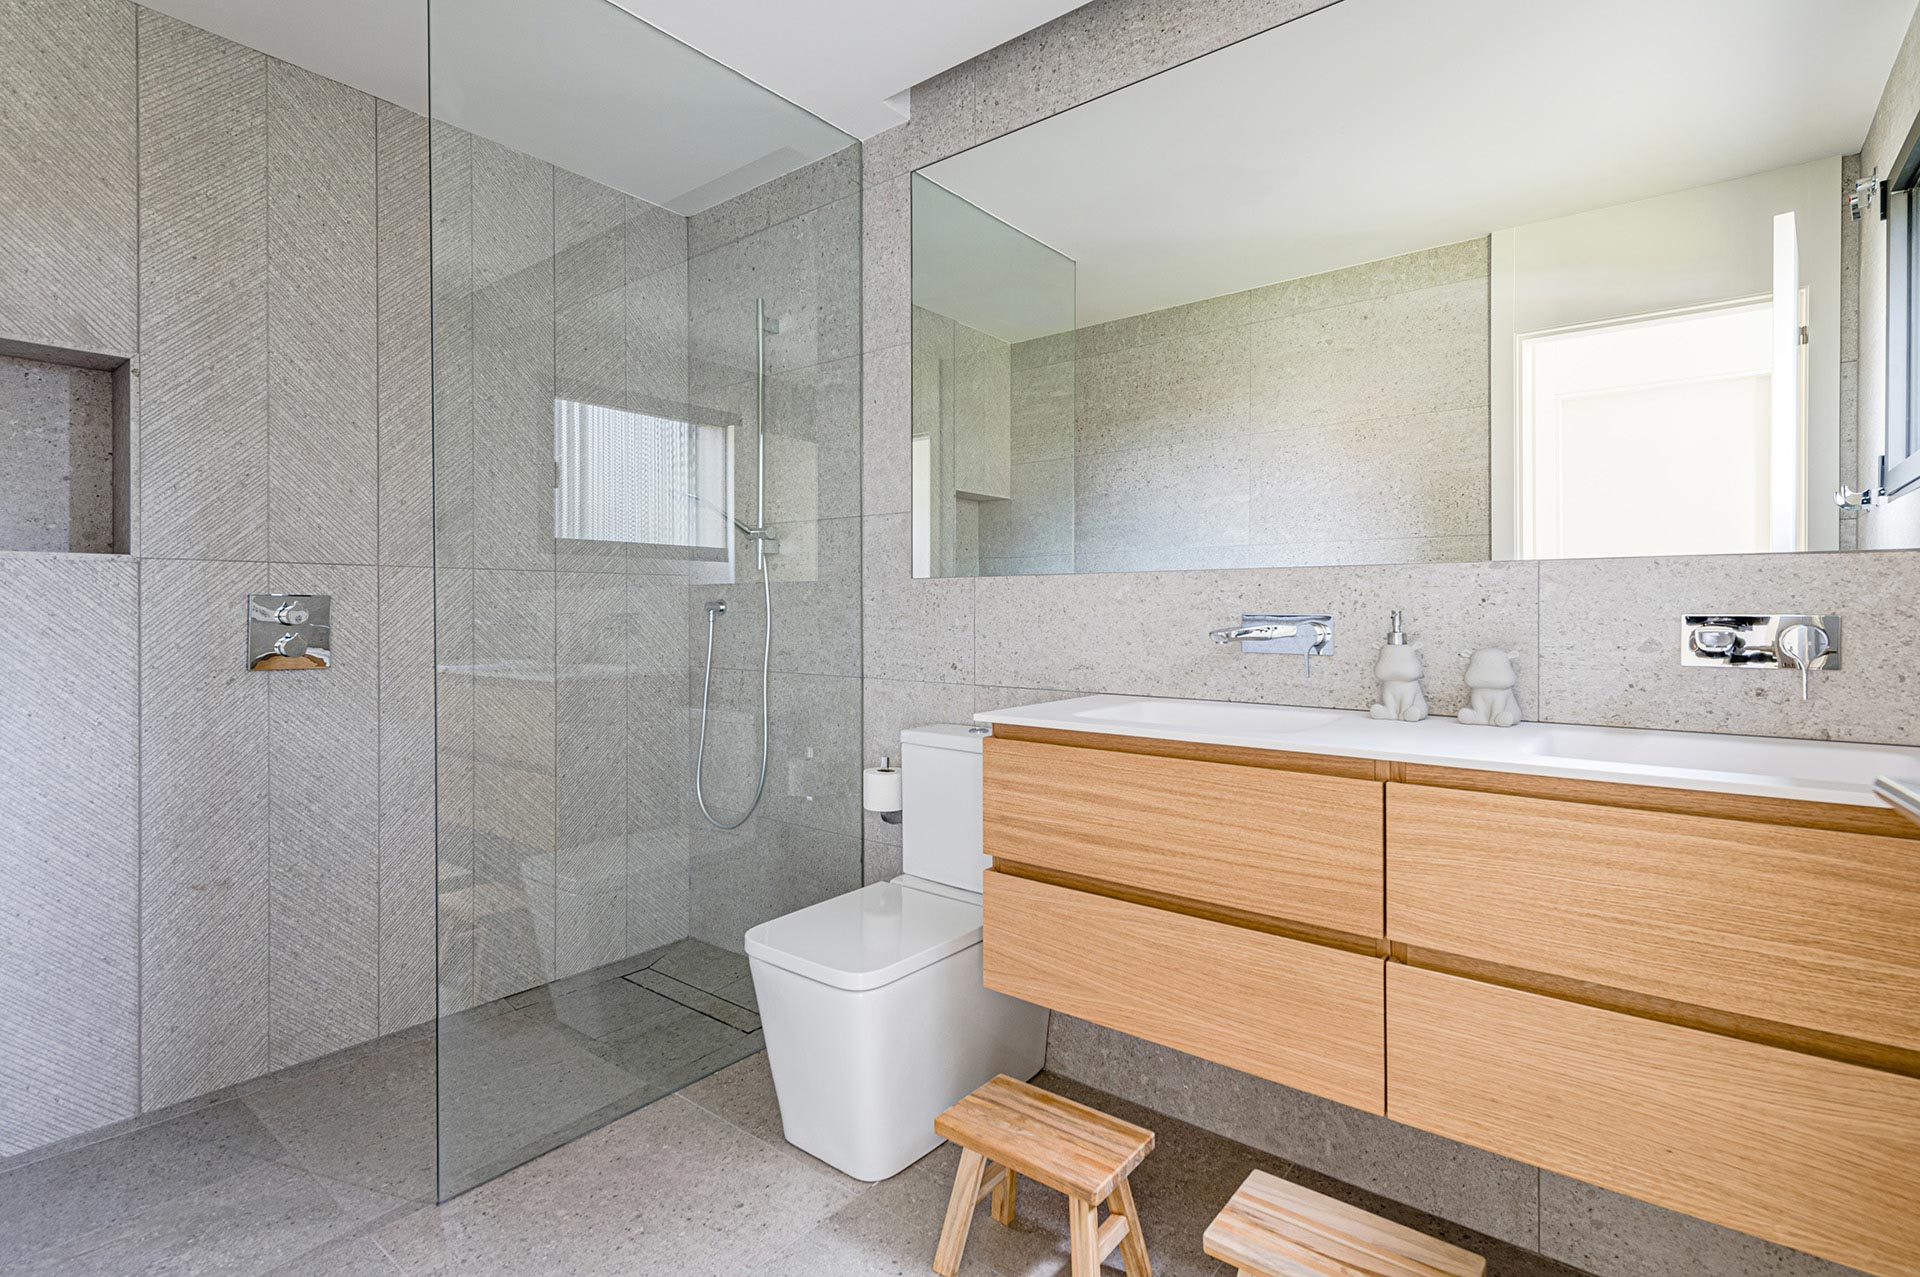 Diseño interior de baño madera y gris diseñado por Moah Arquitectos en Suesa. Cantabria.